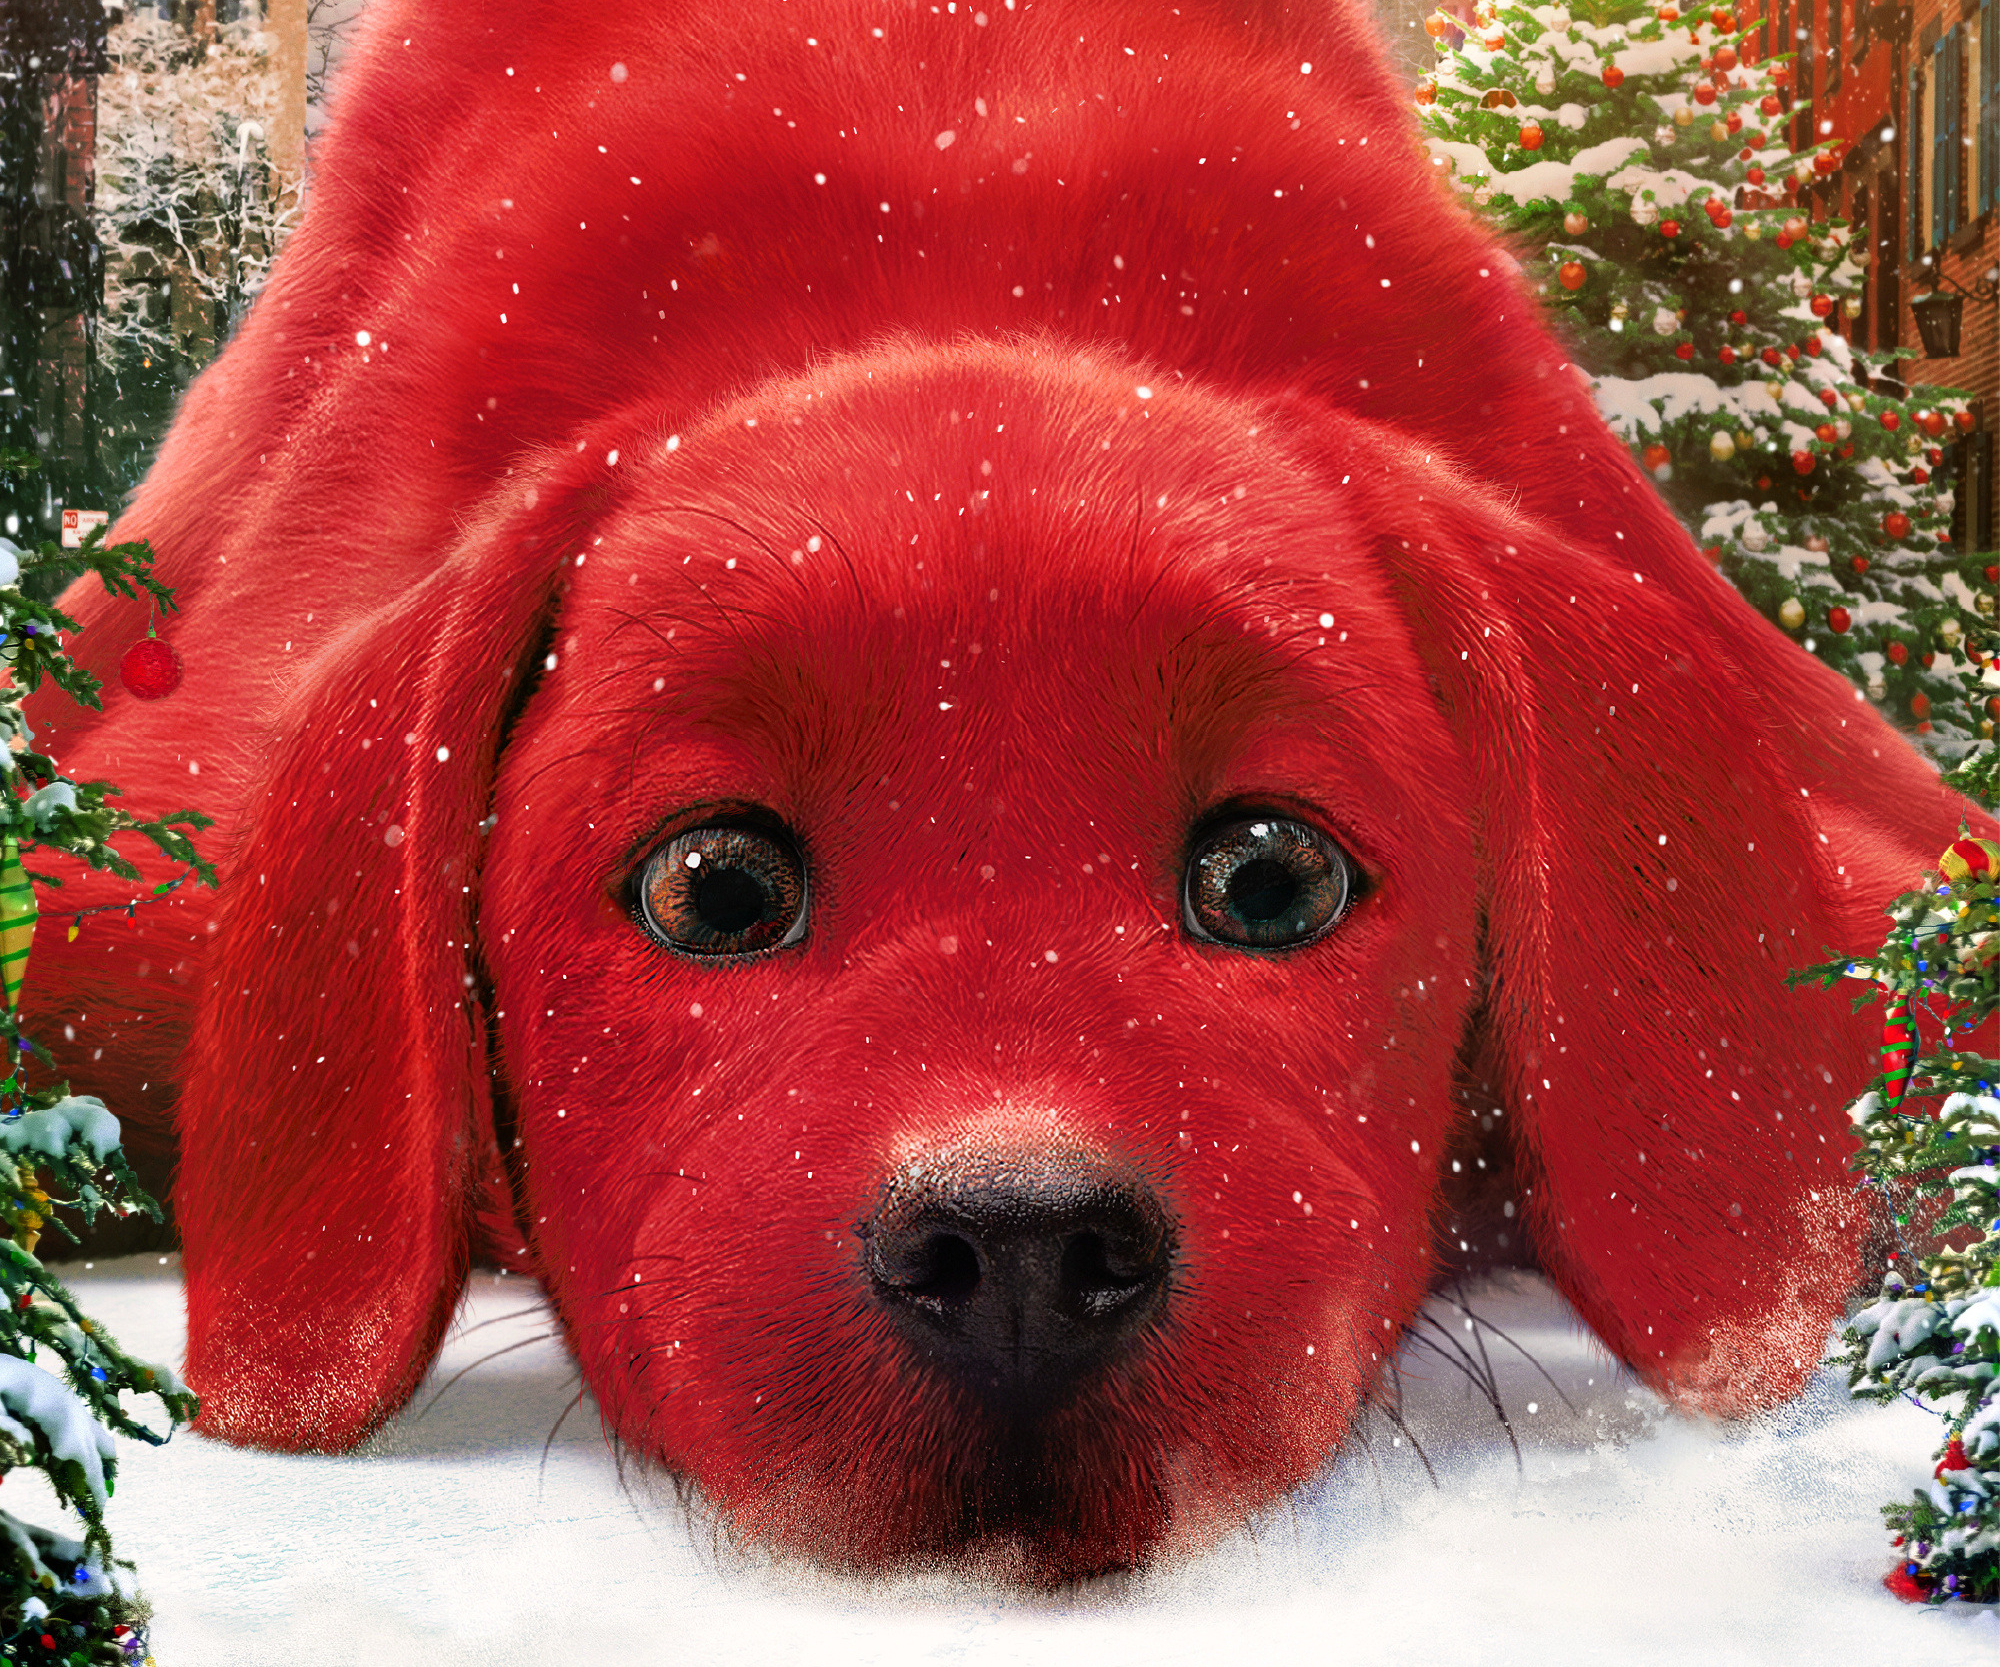 Laden Sie Clifford Der Große Rote Hund HD-Desktop-Hintergründe herunter